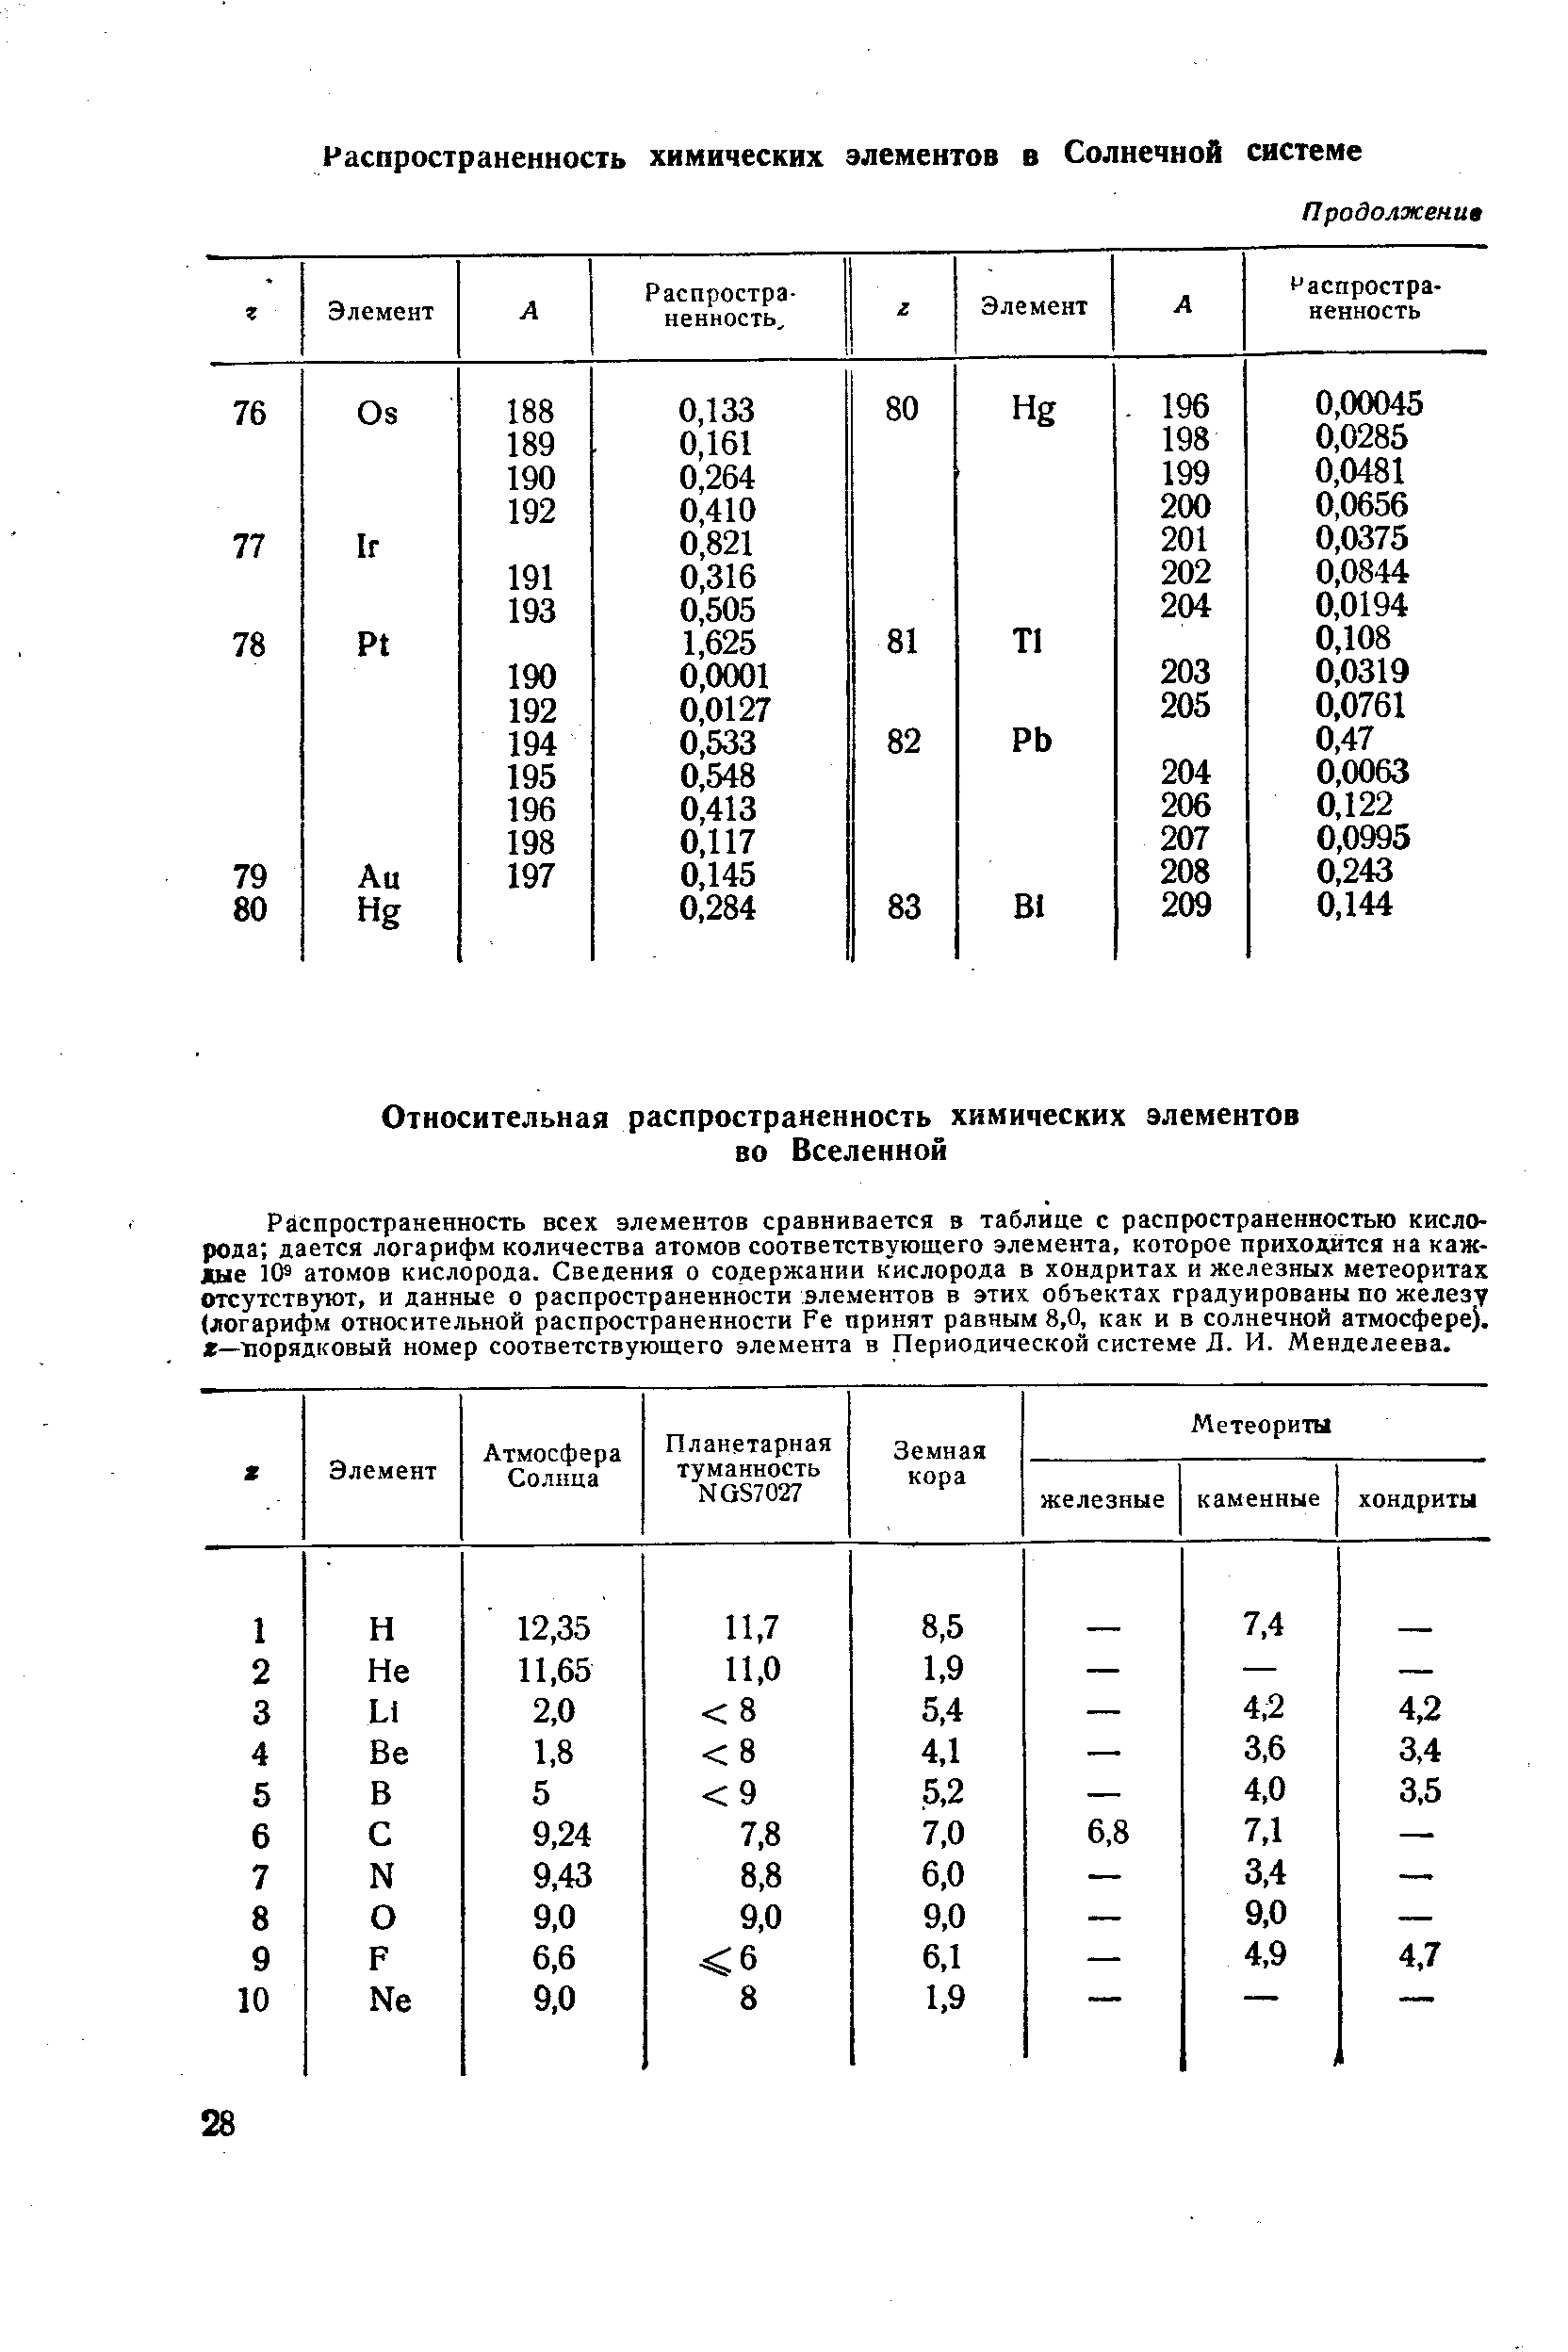 Распространенность всех элементов сравнивается в таблице с распространенностью кислорода дается логарифм количества атомов соответствующего элемента, которое приходится на каждые атомов кислорода. Сведения о содержании кислорода в хоидритах и железных метеоритах отсутствуют, и данные о распространенности элементов в этих объектах градуированы по железу (логарифм относительной распространенности Fe принят равным 8,0, как и в солнечной атмосфере), — порядковый номер соответствующего элемента в Периодической системе Д. И. Менделеева.